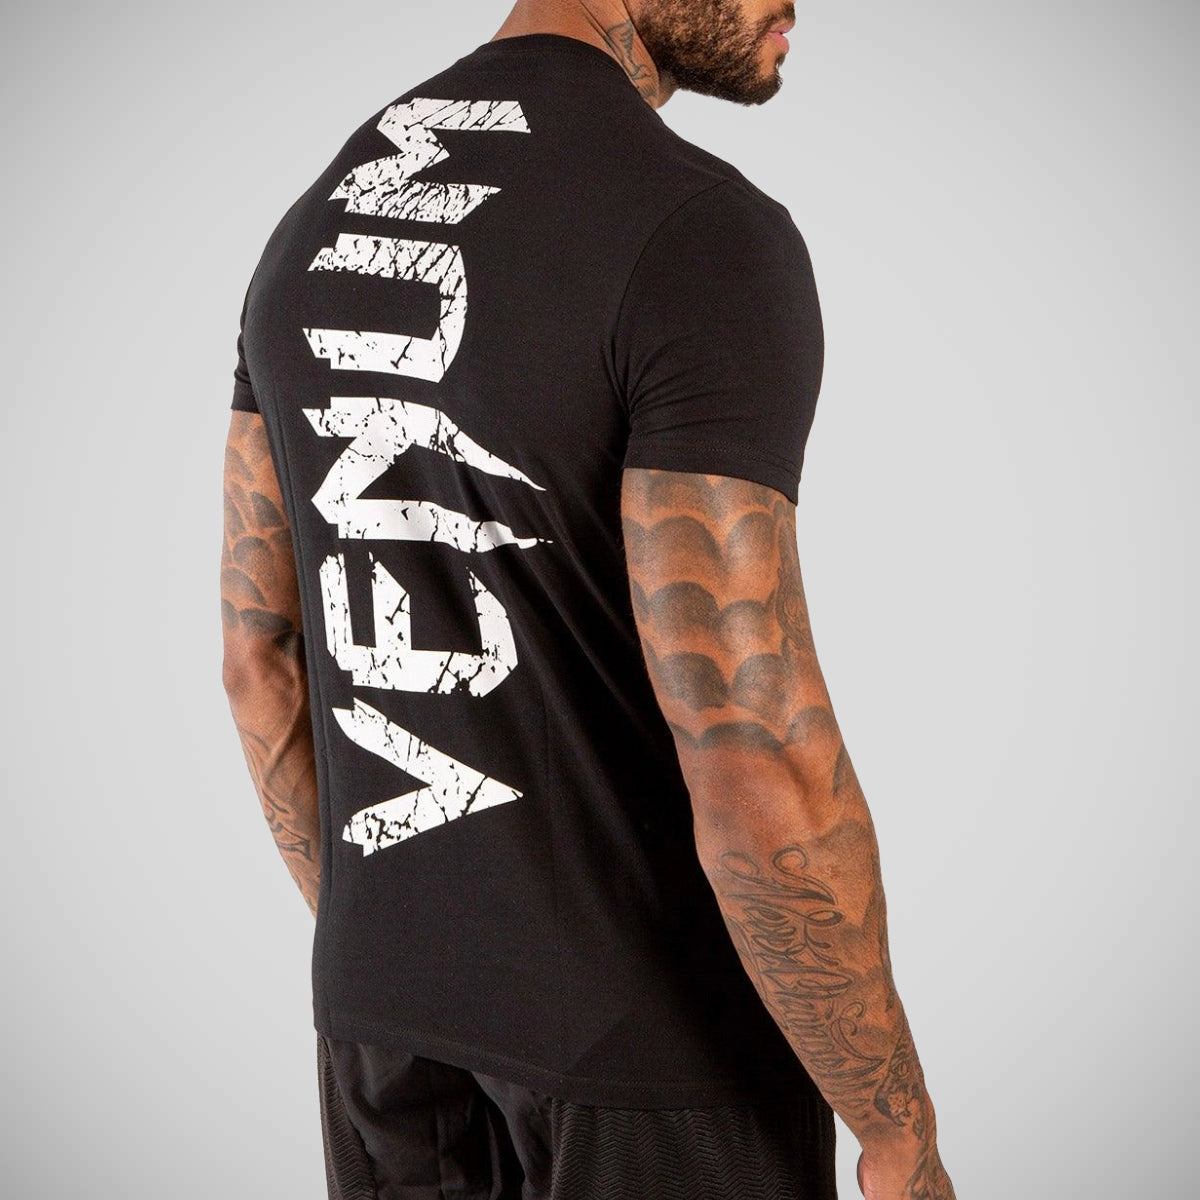 Venum Giant Men's T Shirt Black/White